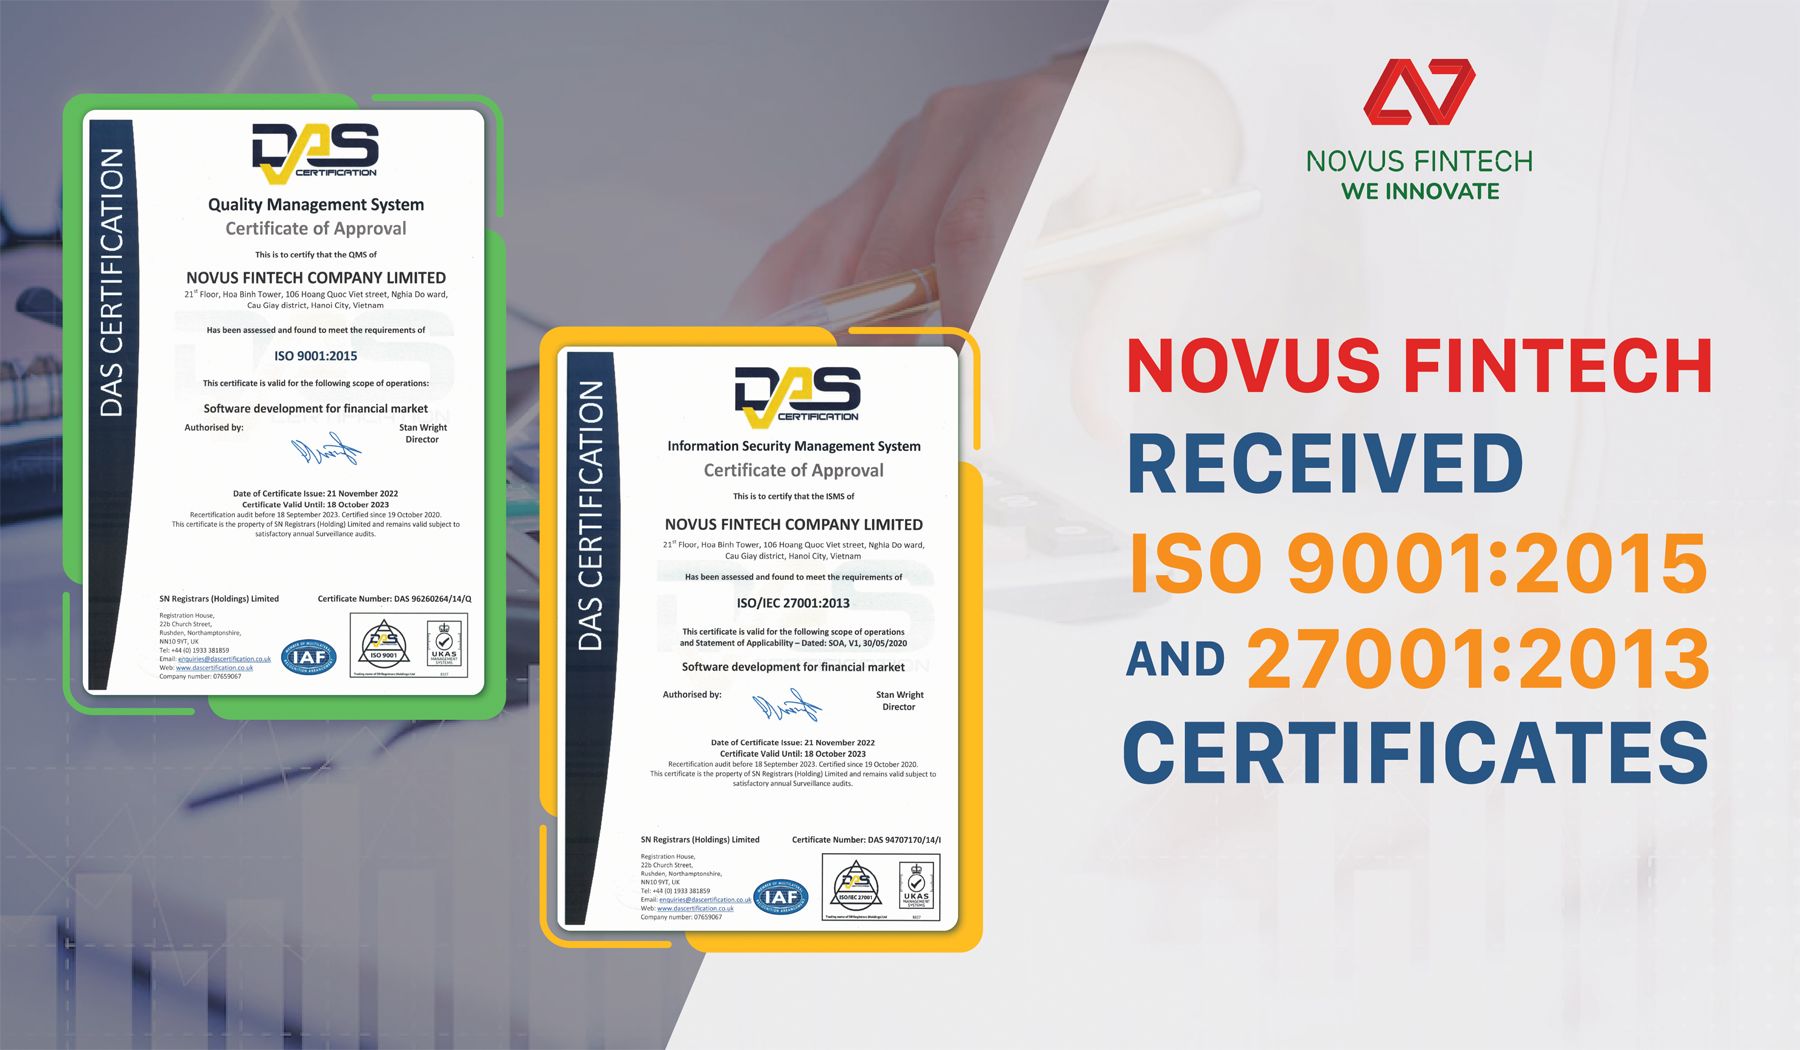 Vinh dự đạt Chứng chỉ ISO, Novus Fintech khẳng định 15 năm nỗ lực